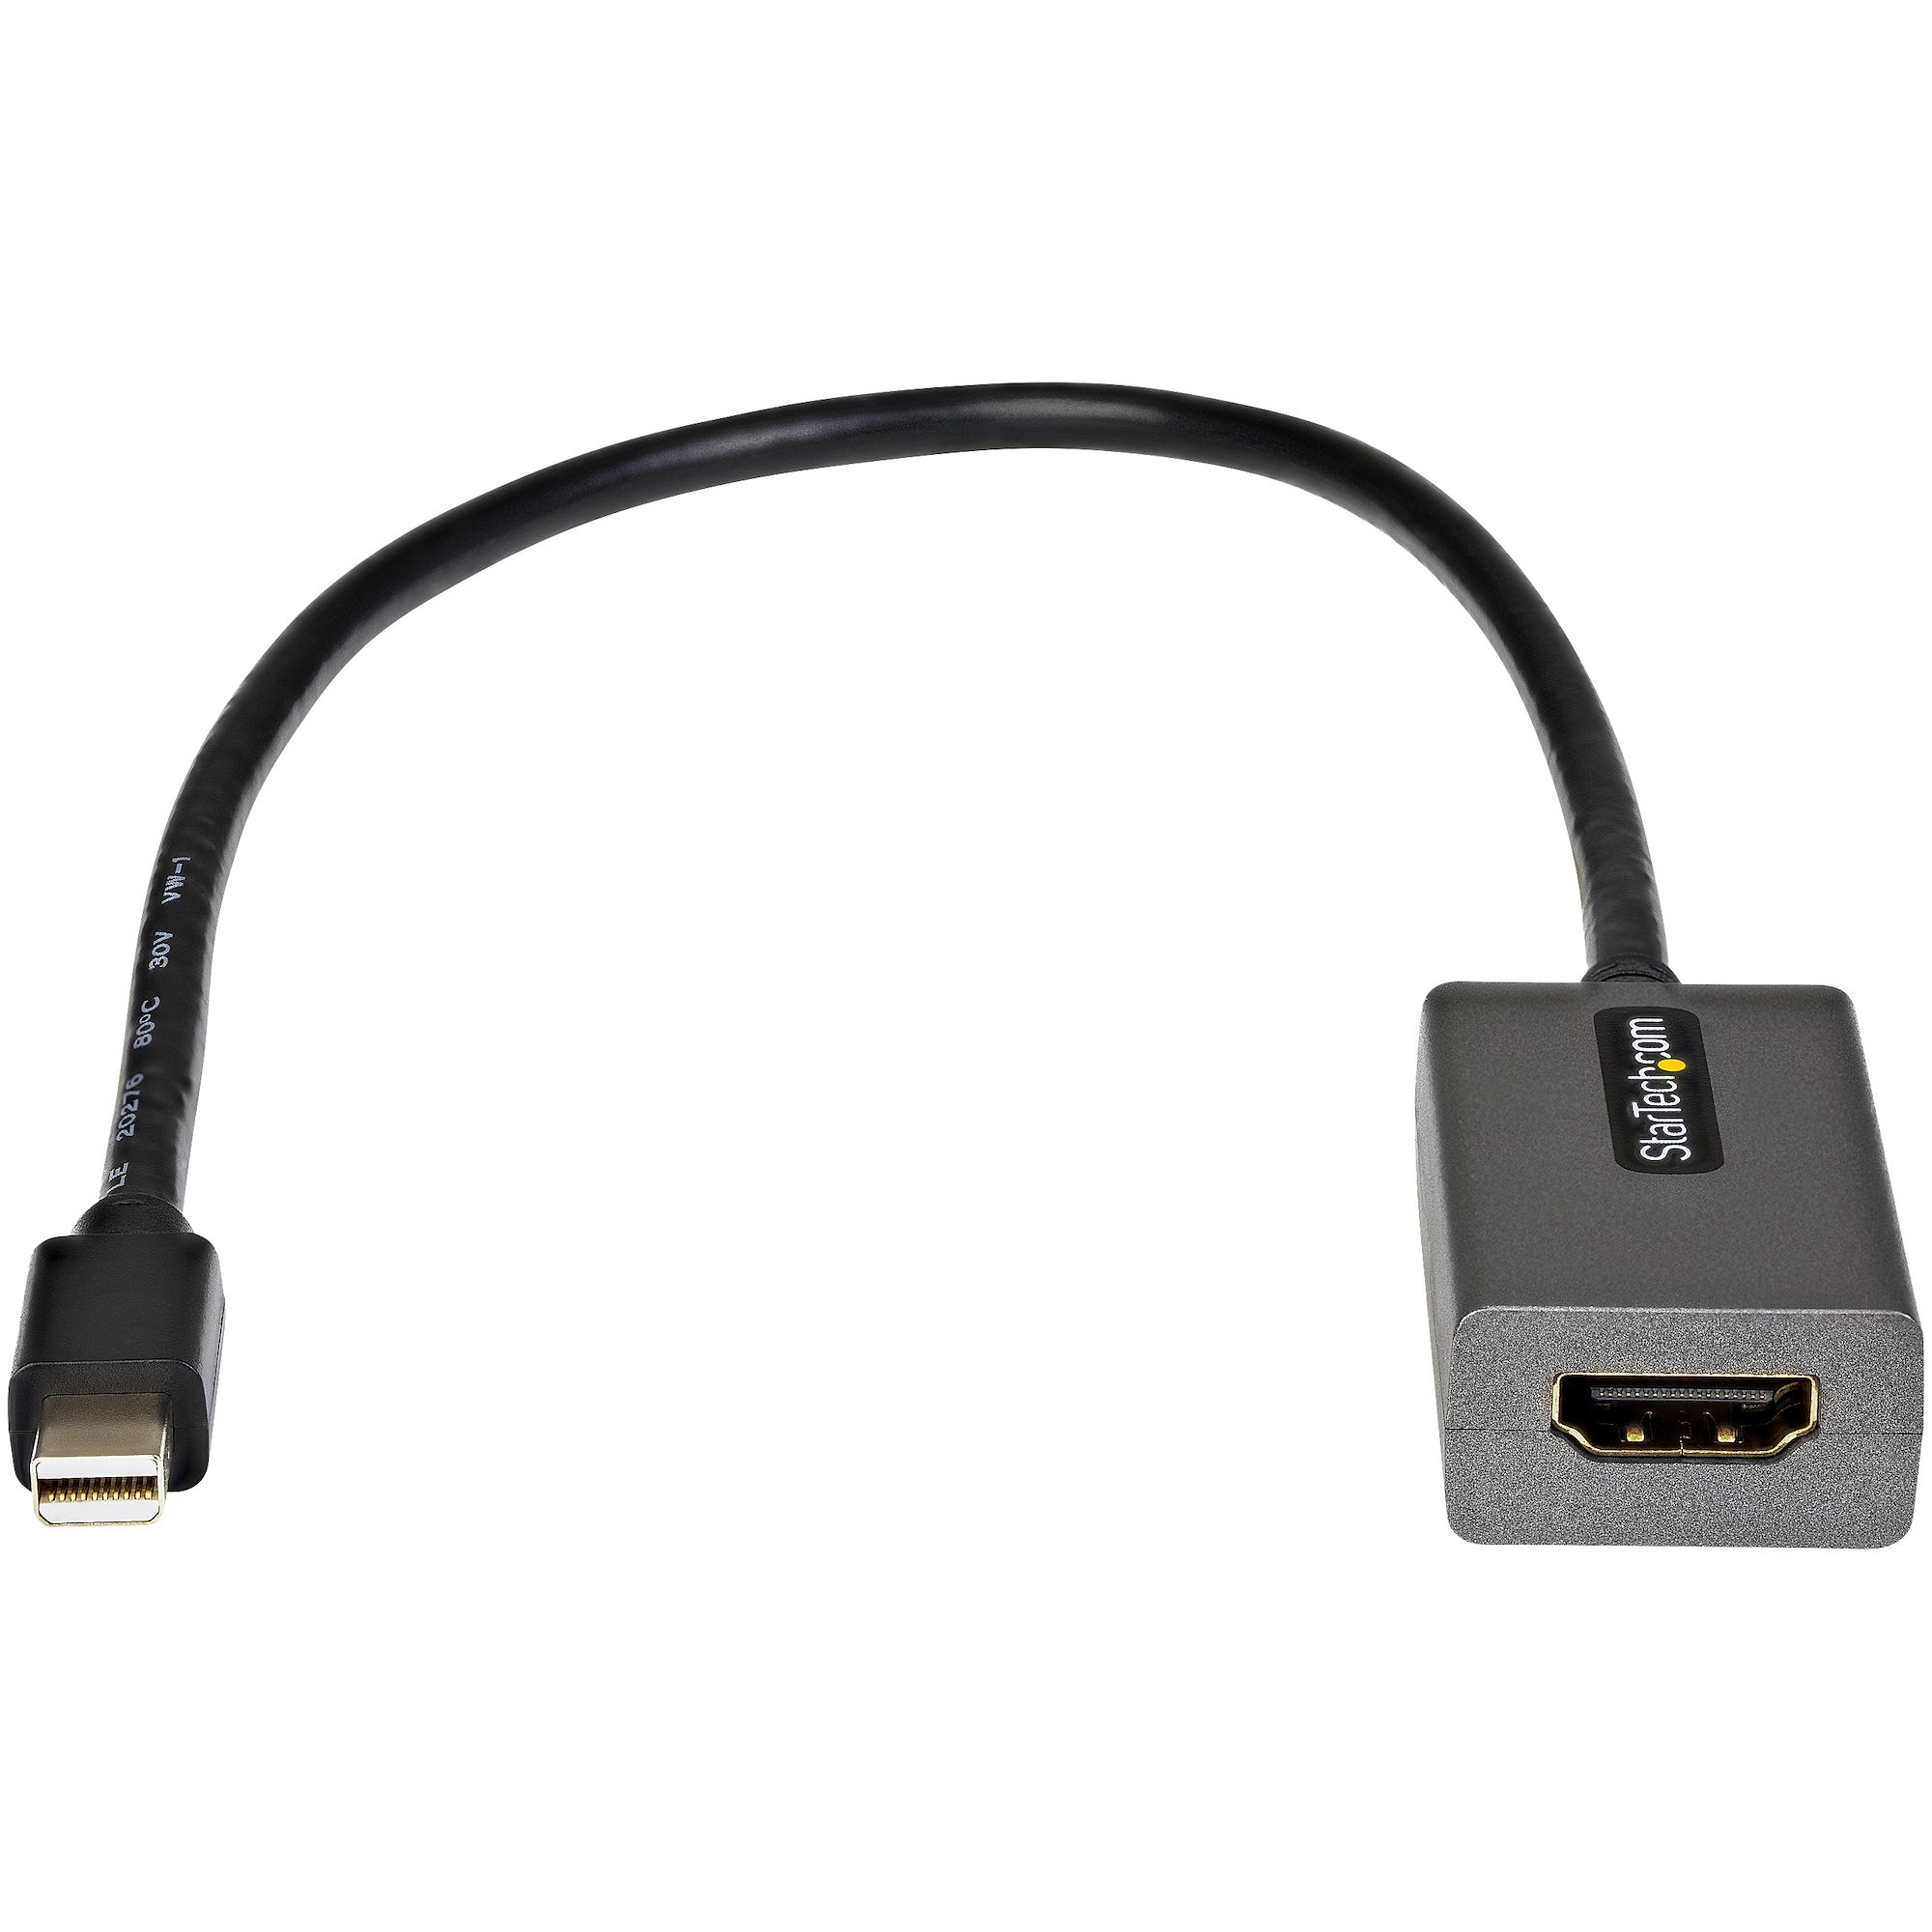 ディスプレイ変換ケーブル／13cm／Mini DisplayPort 1.2 -  HDMI／1080p／パッシブ変換／mDPオス・HDMIメス／MDP2HDMIのアップグレード製品